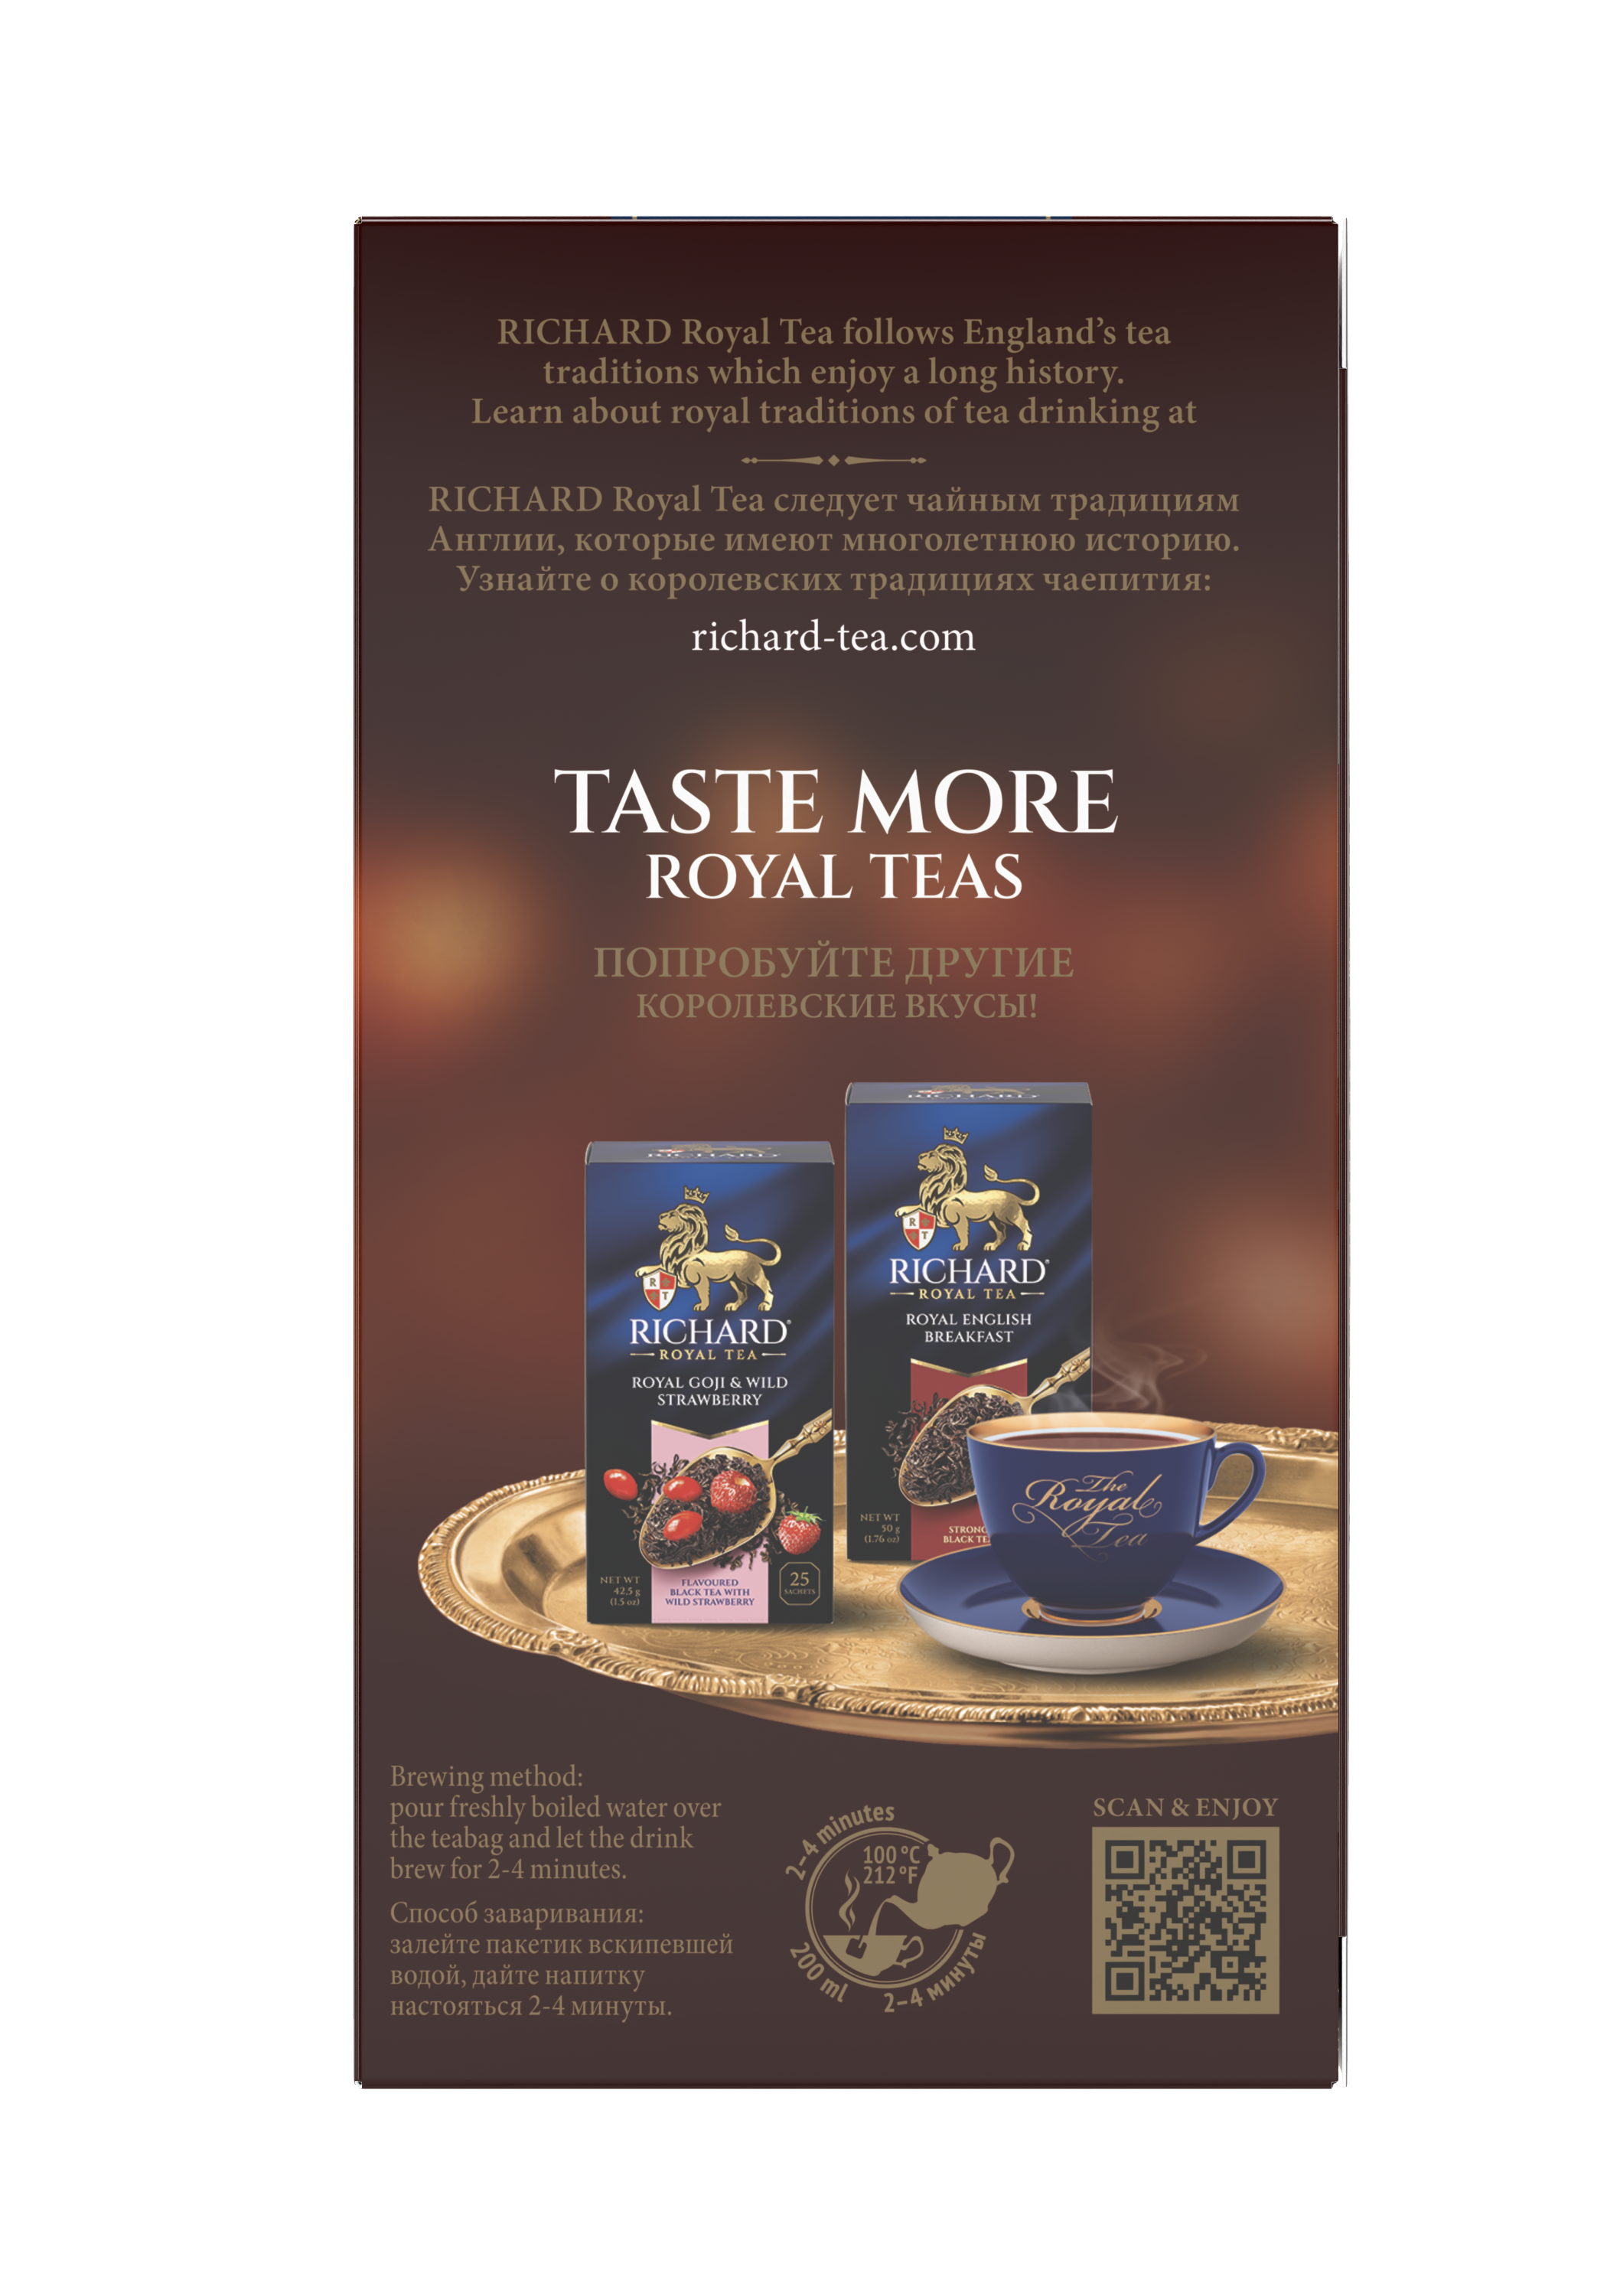 Richard Royal Melengető Bogyók & Hibiszkusz ízesített fekete tea, 25 filter Richard Royal Tea